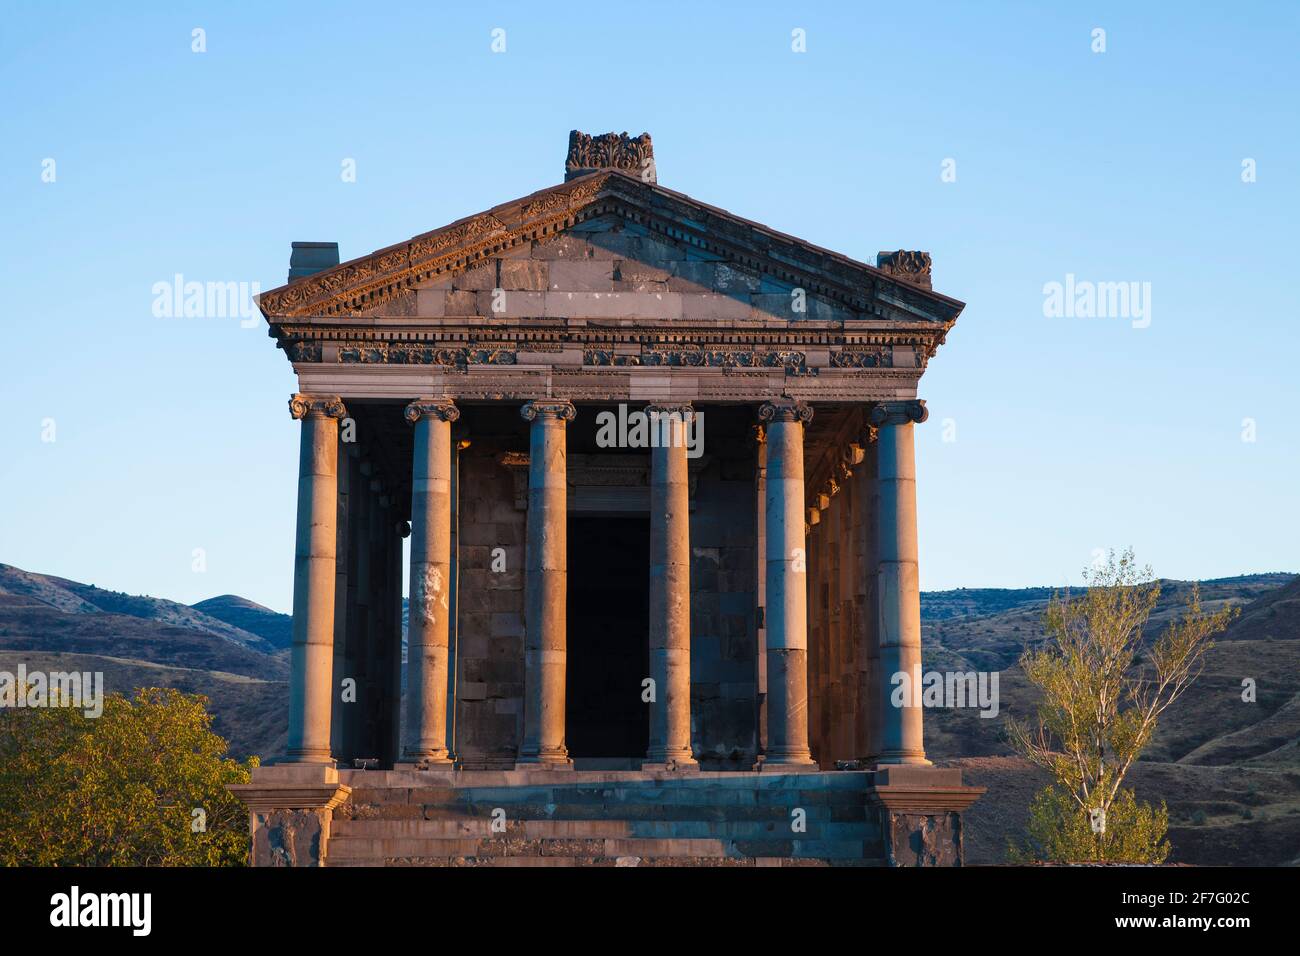 Armenia, Yerevan, Garni, Garni Temple Stock Photo